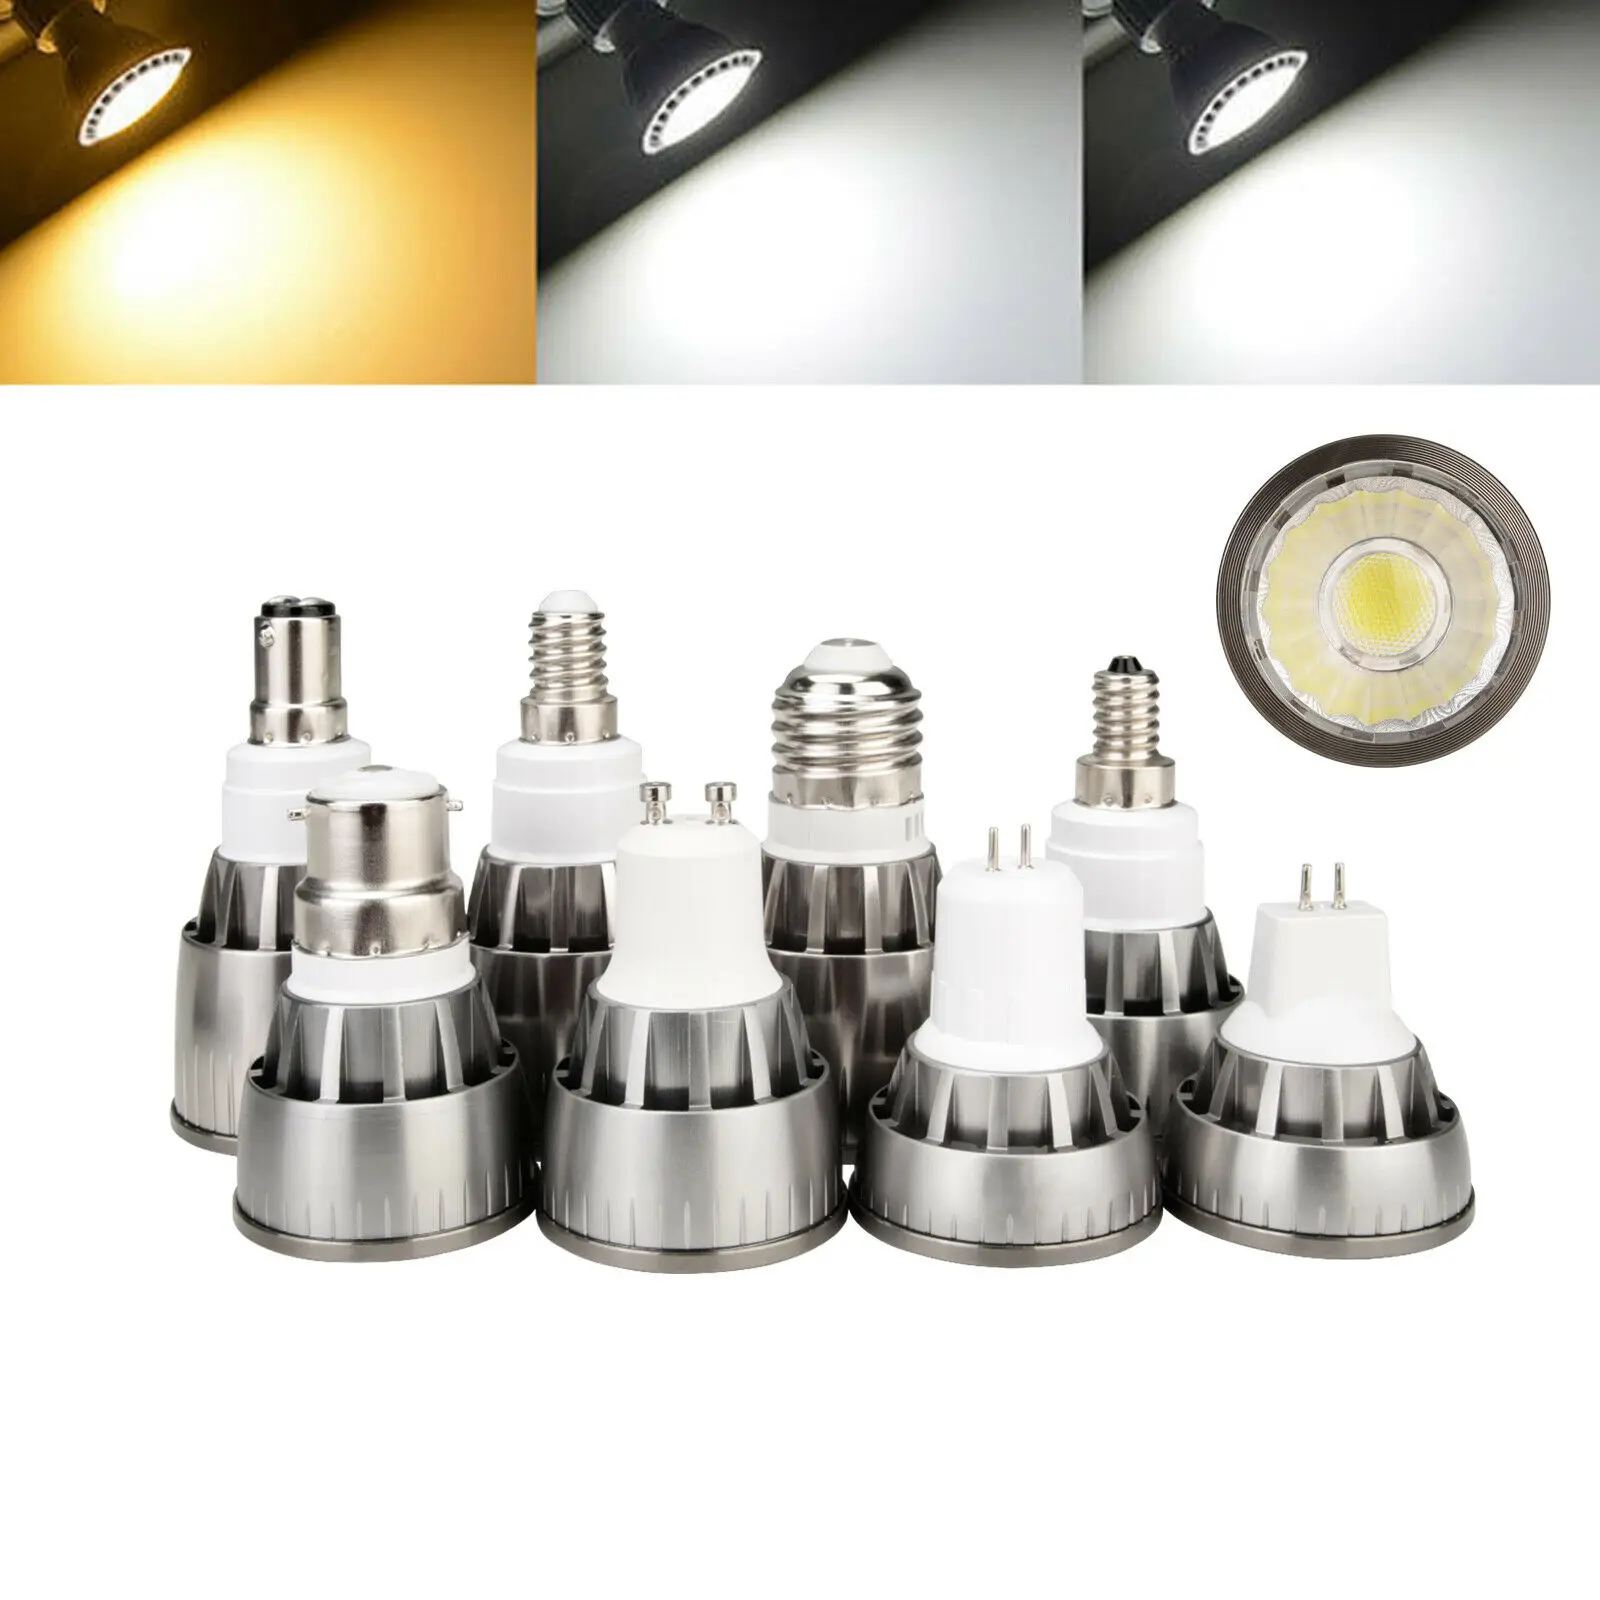 

GU10 LED COB Spotlight Bulb E12 E14 E27 MR16 GU5.3 B15 7W 9W 12W Lamp Warm Cool White Neutral White 12V 85-265V Lamps For Home